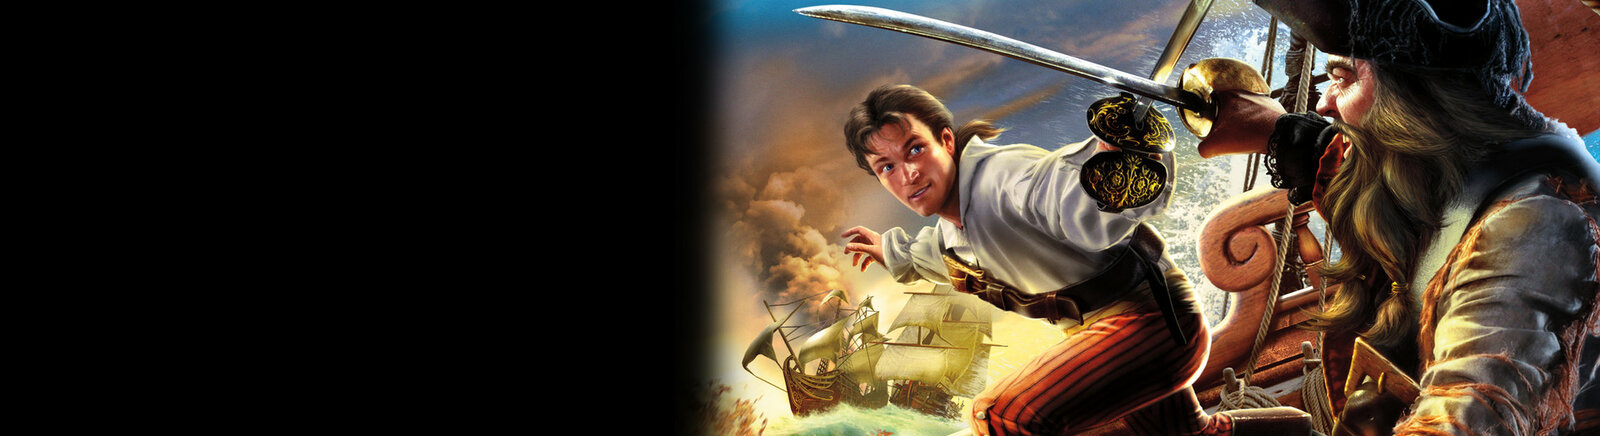 Дата выхода Sid Meier's Pirates! (2007)  на PSP в России и во всем мире